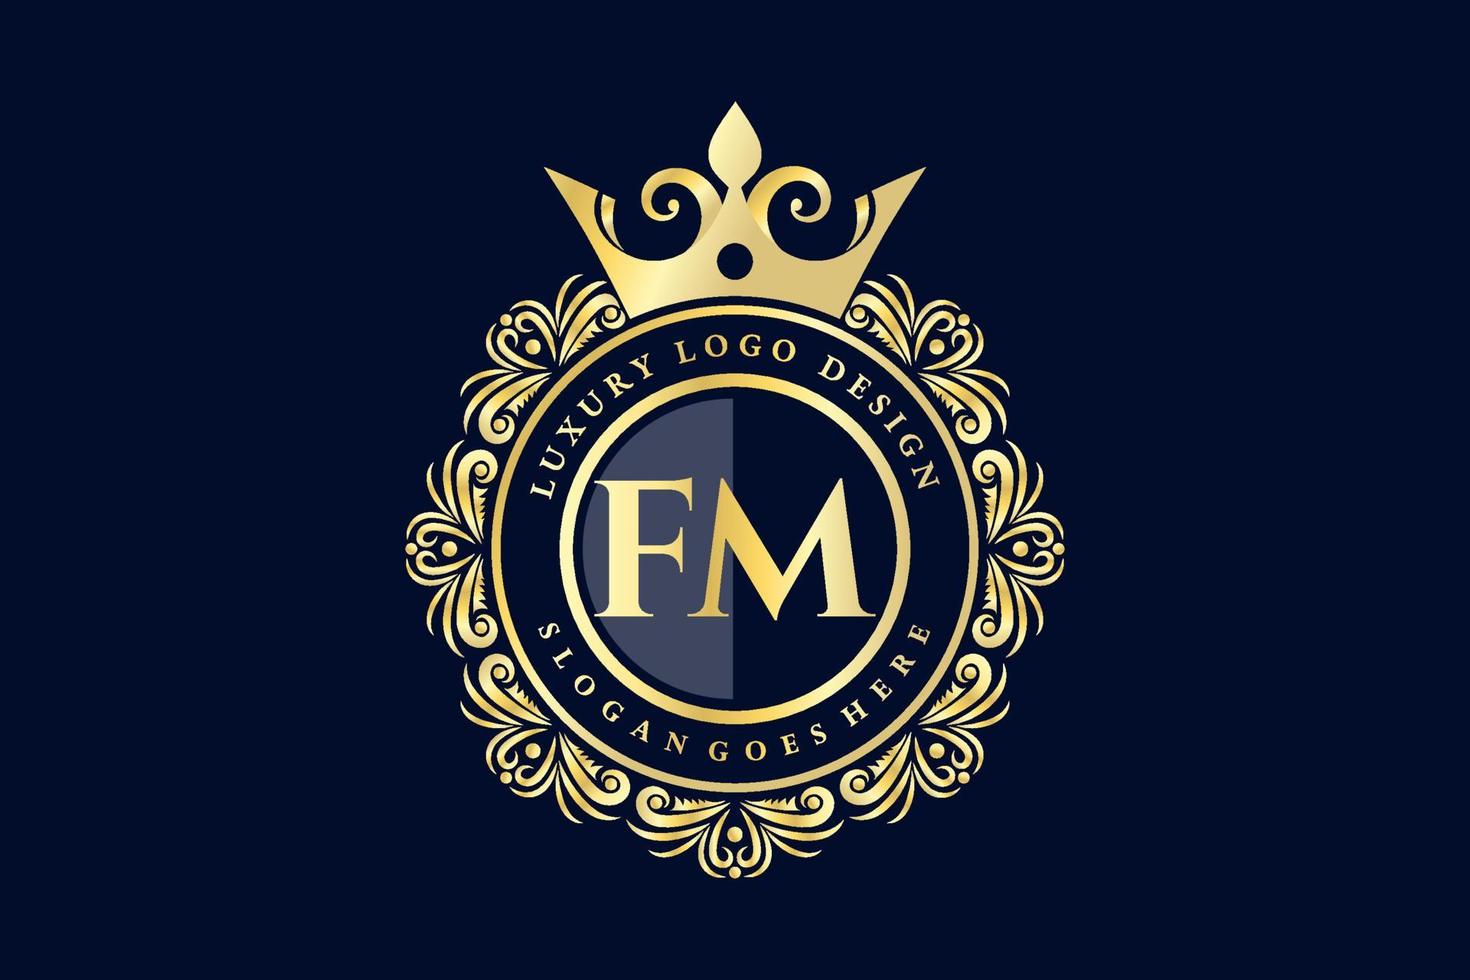 fm letra inicial oro caligráfico femenino floral dibujado a mano monograma heráldico antiguo estilo vintage diseño de logotipo de lujo vector premium